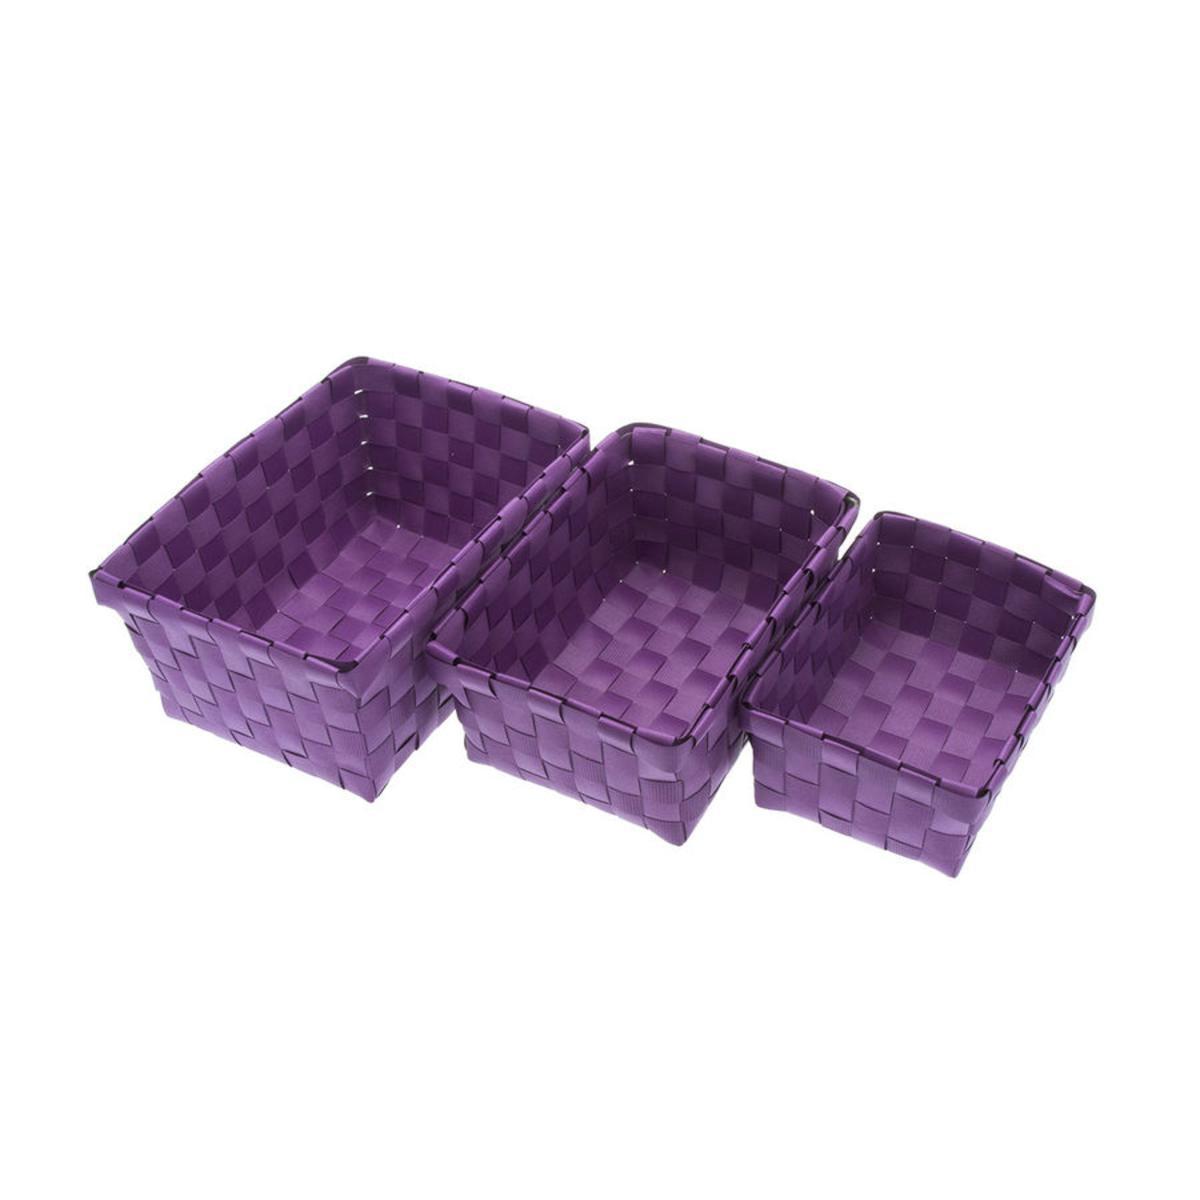 Lot de 3 paniers en polypropylène - 23 x 14 cm/ 17 x 12,5 cm/ 15 x 11 cm - Violet aubergine